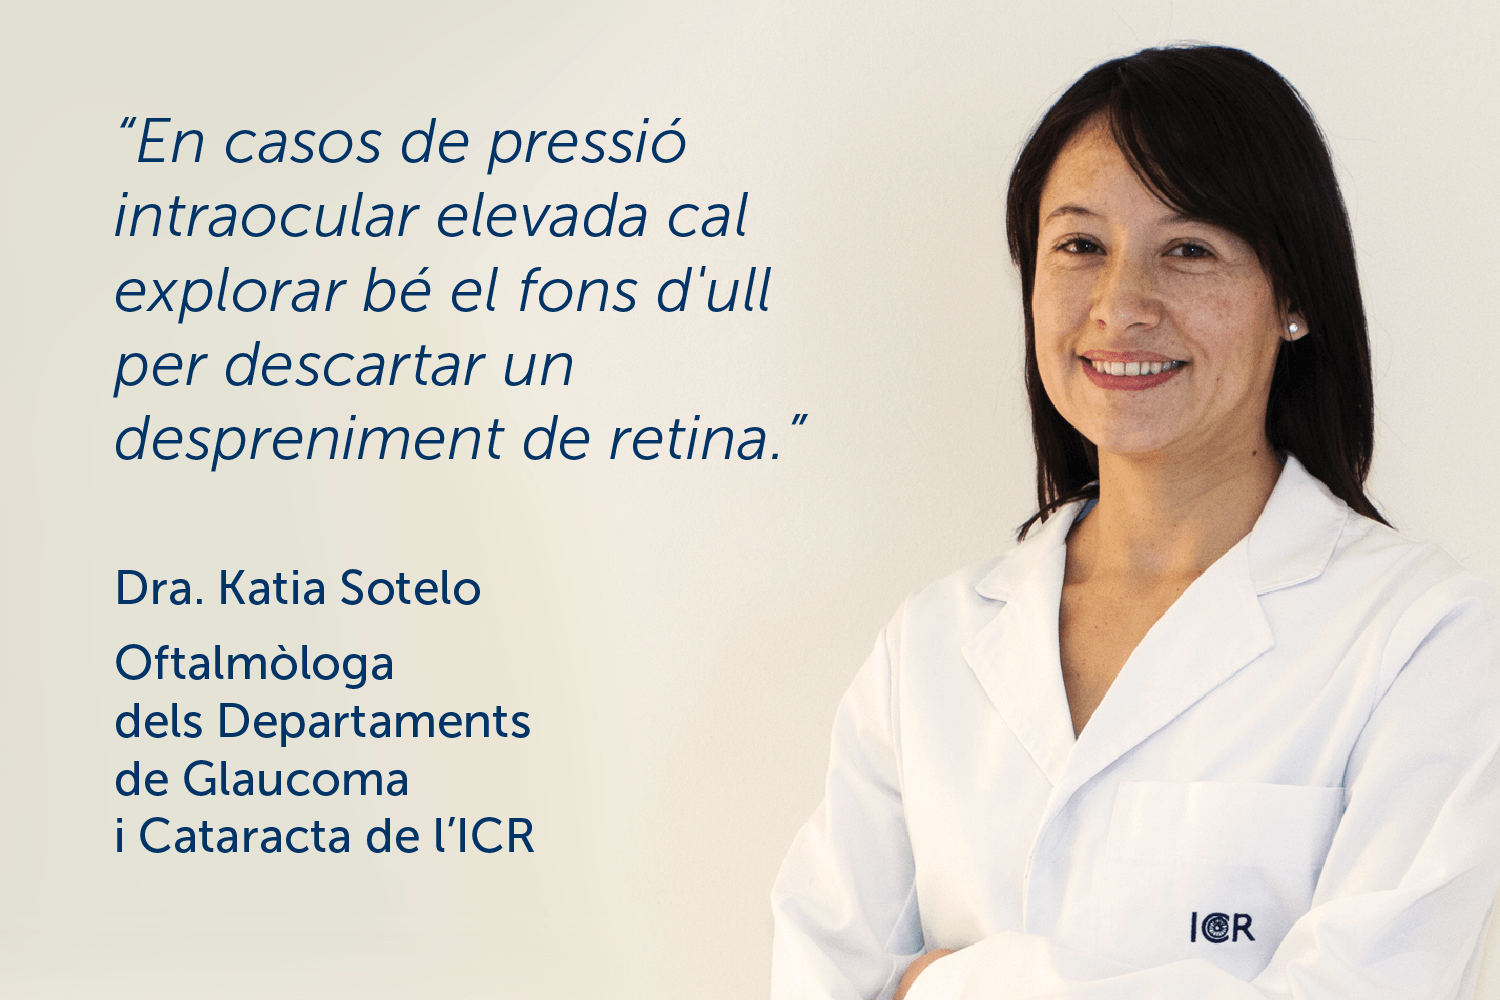 La Societat Espanyola d’Oftalmologia publica un estudi de l’ICR sobre despreniment de retina i pressió intraocular